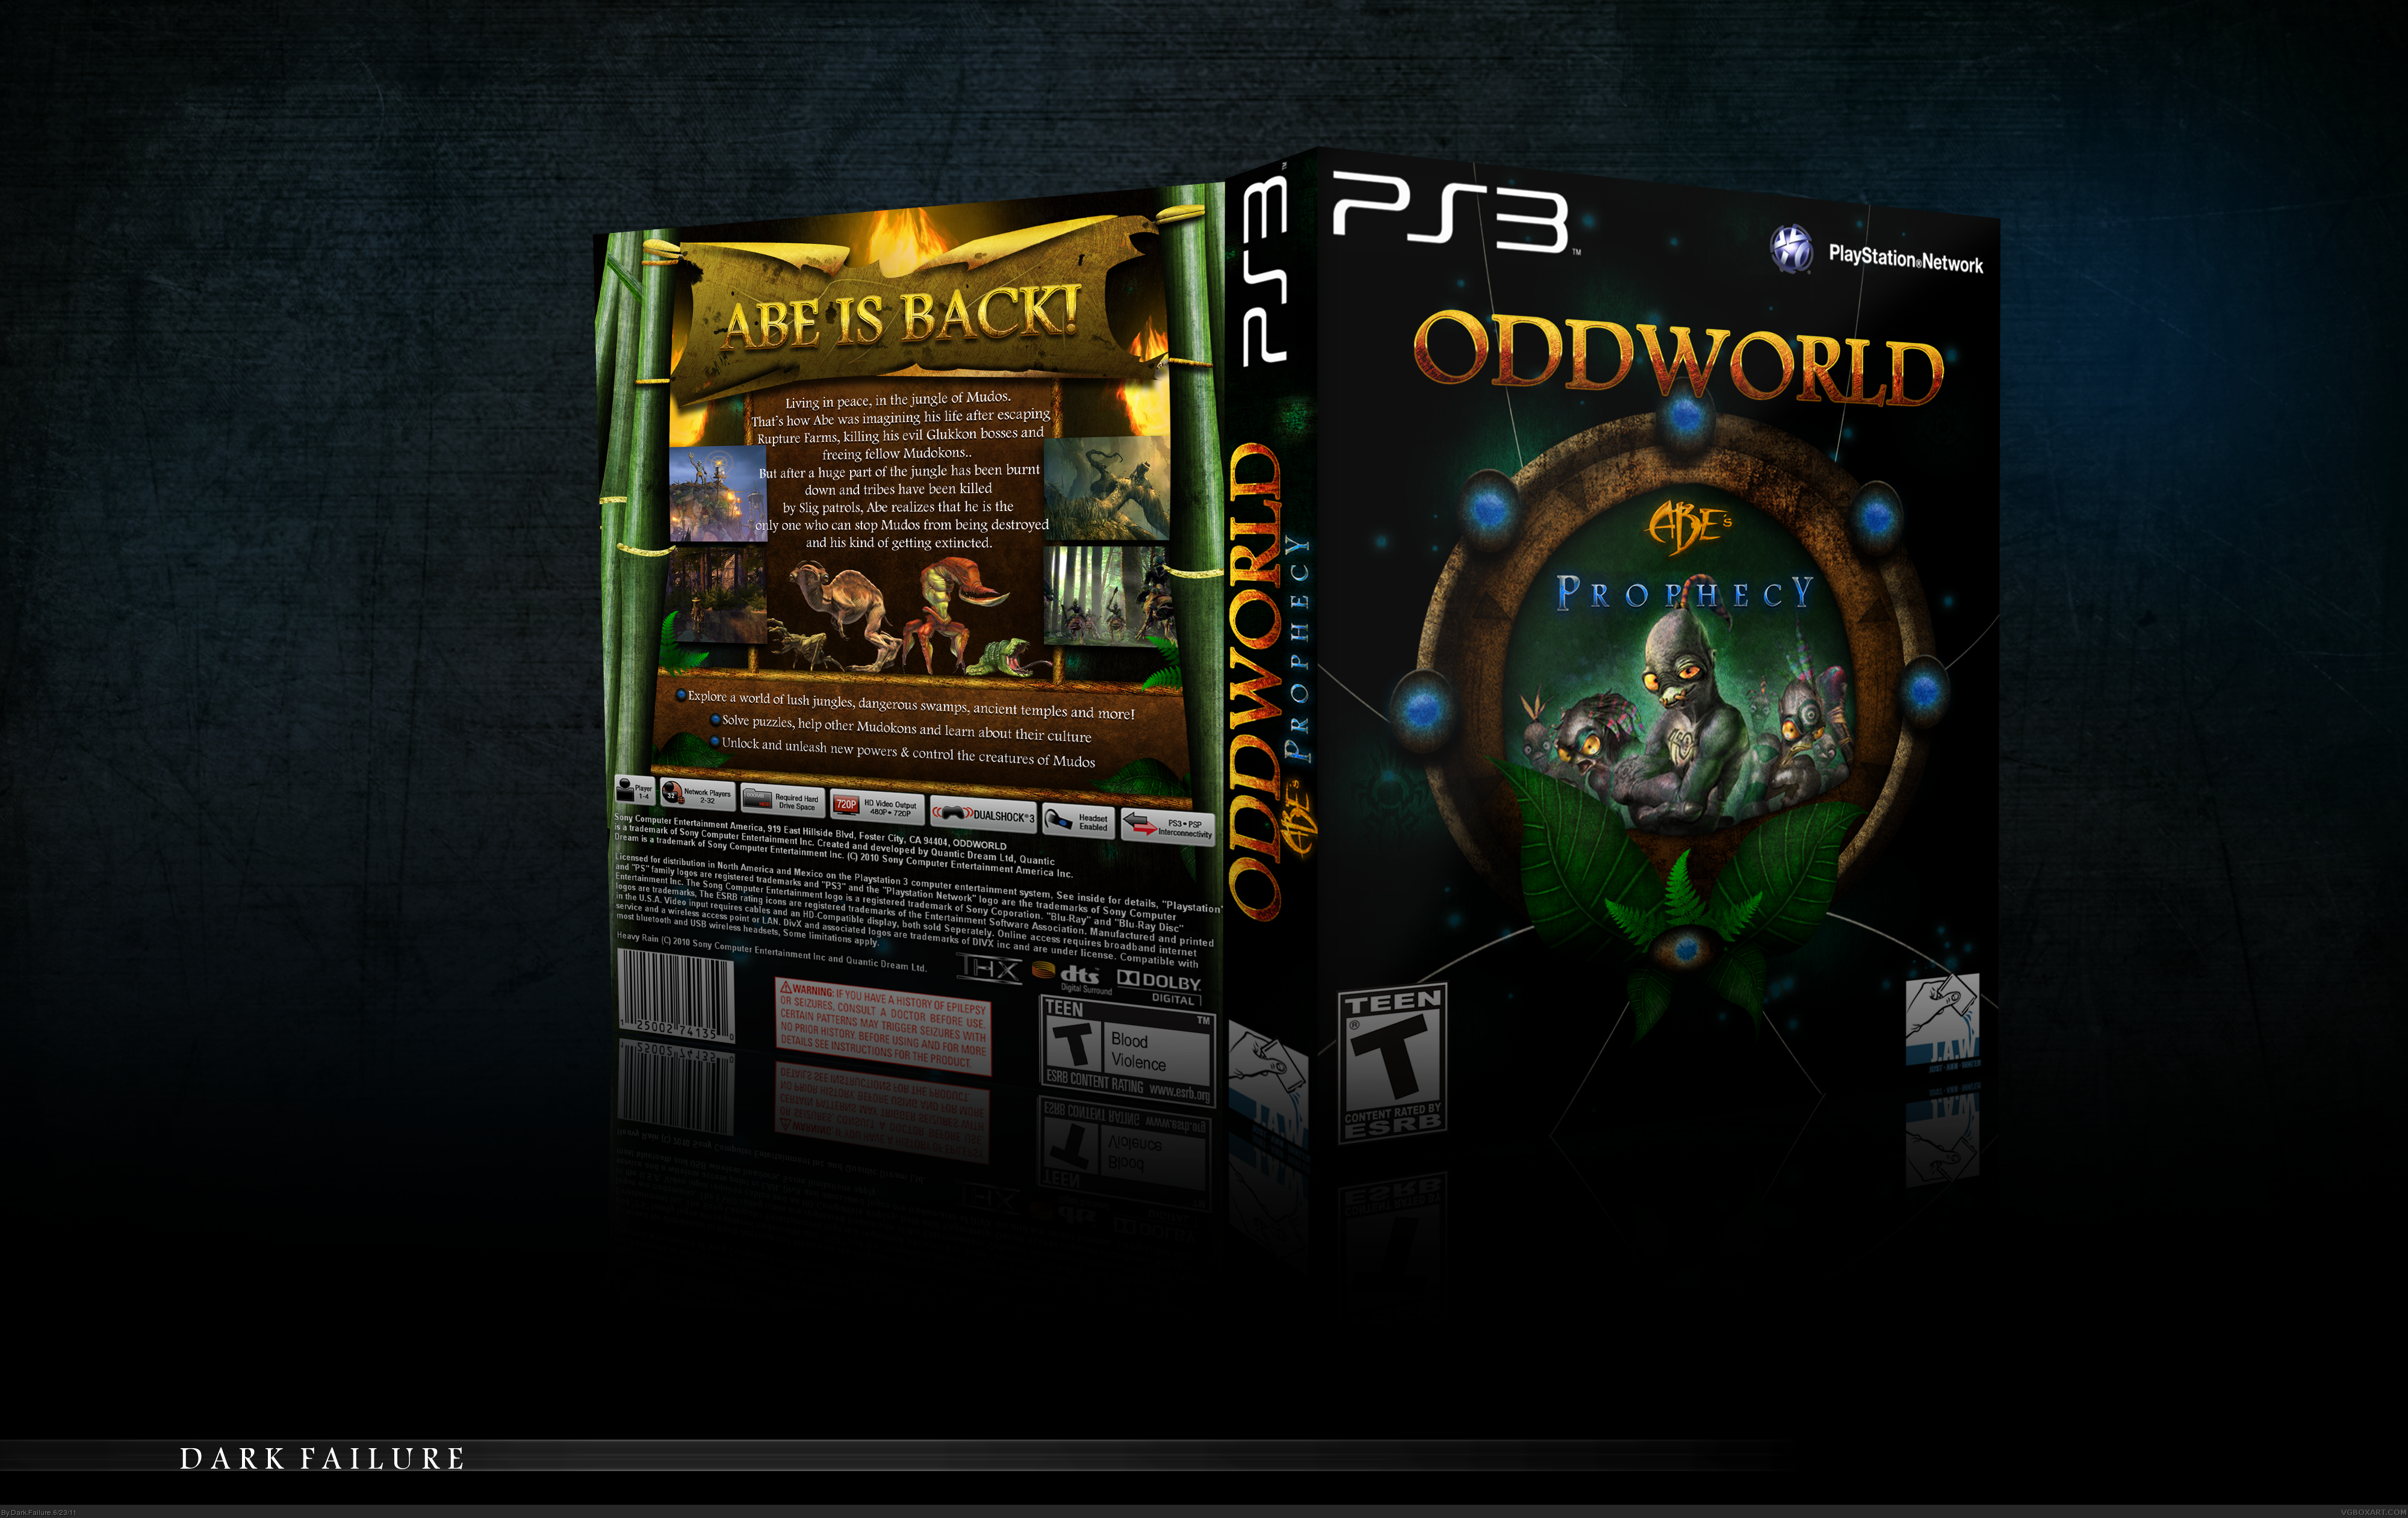 Oddworld: Abe's Prophecy box cover